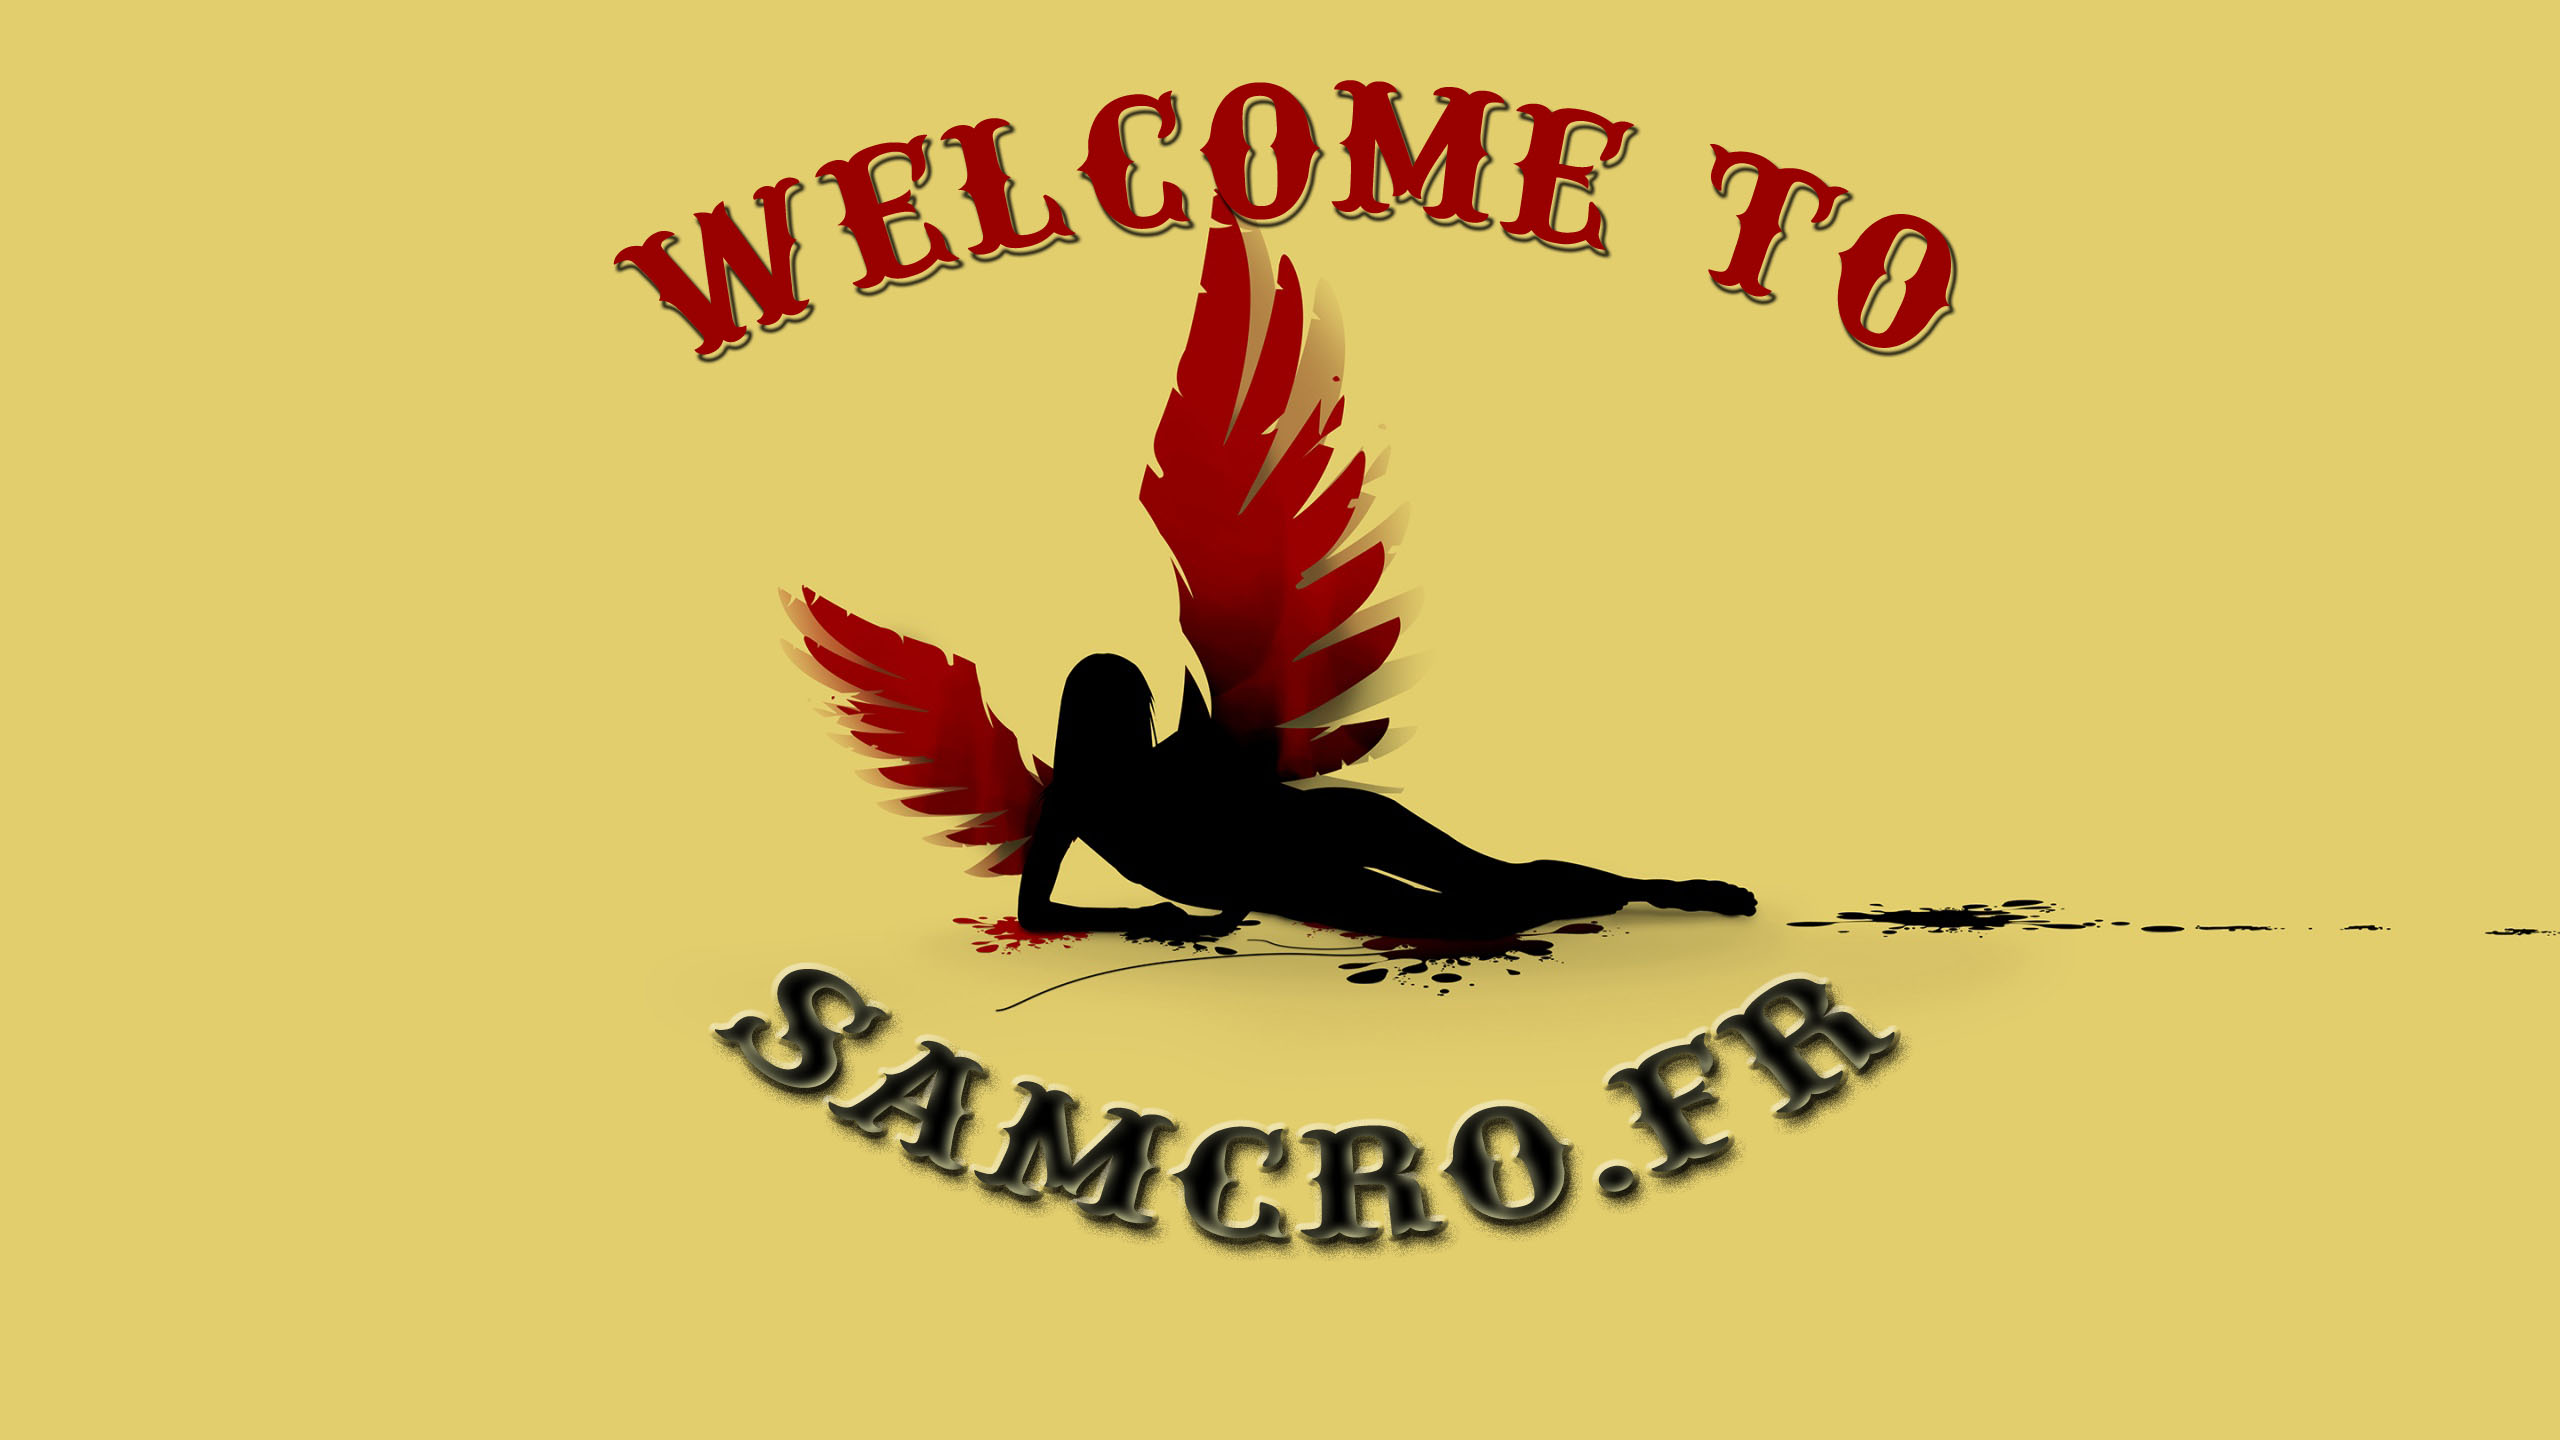 samcro.fr www.samcro.fr samcro.fr